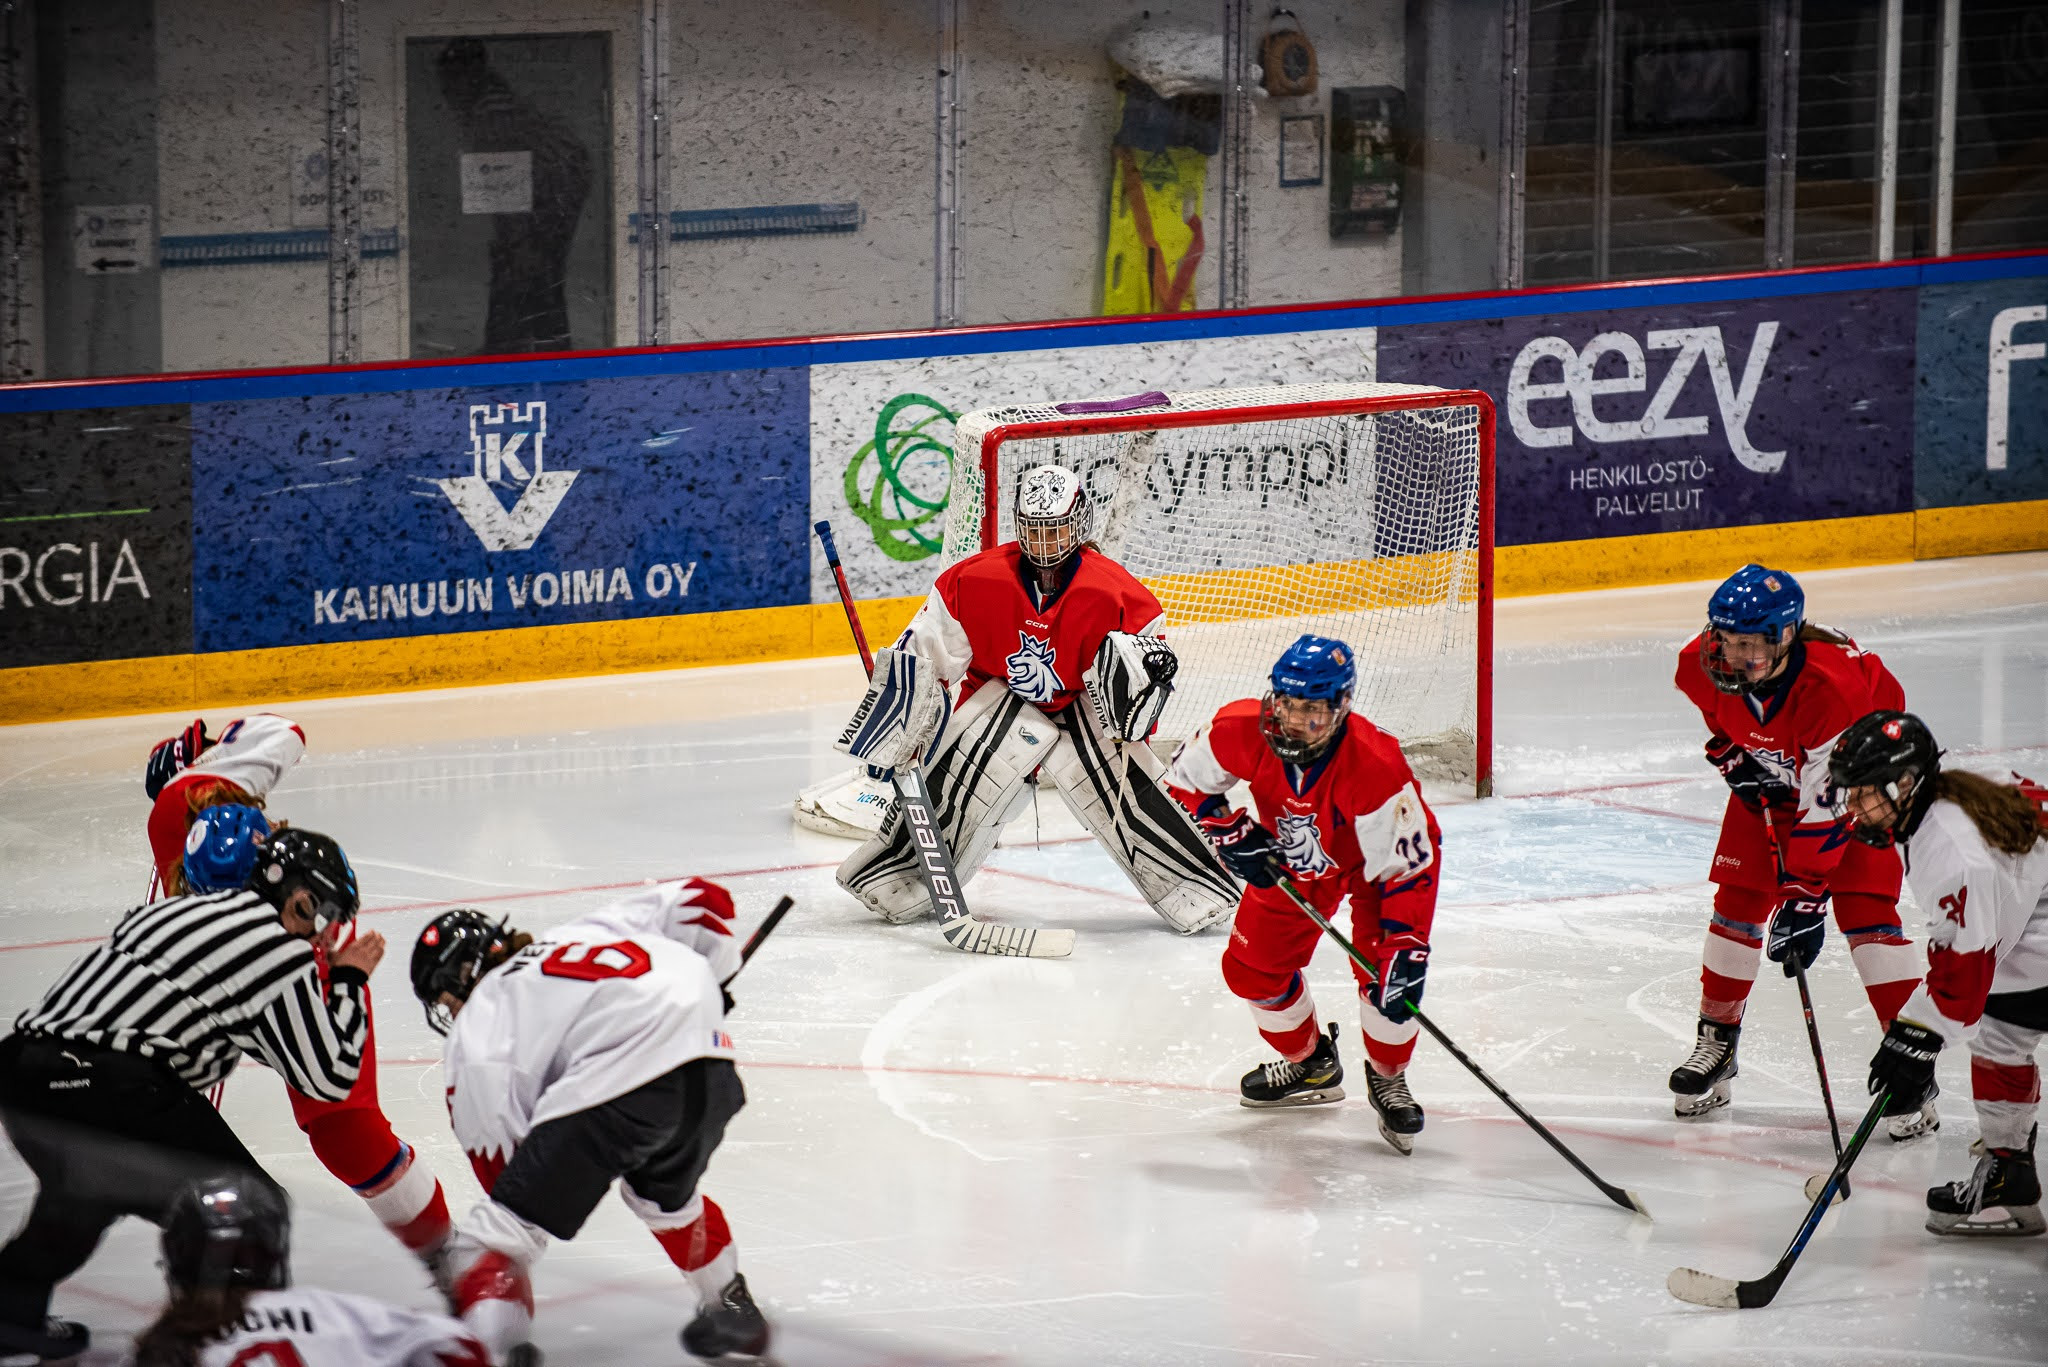 Czech Republic also beat Switzerland 4-1 earlier in the competition at the Kajaani Ice Hockey Halls ©Hannu Kilpeläinen/EYOF 2022 Vuokatti